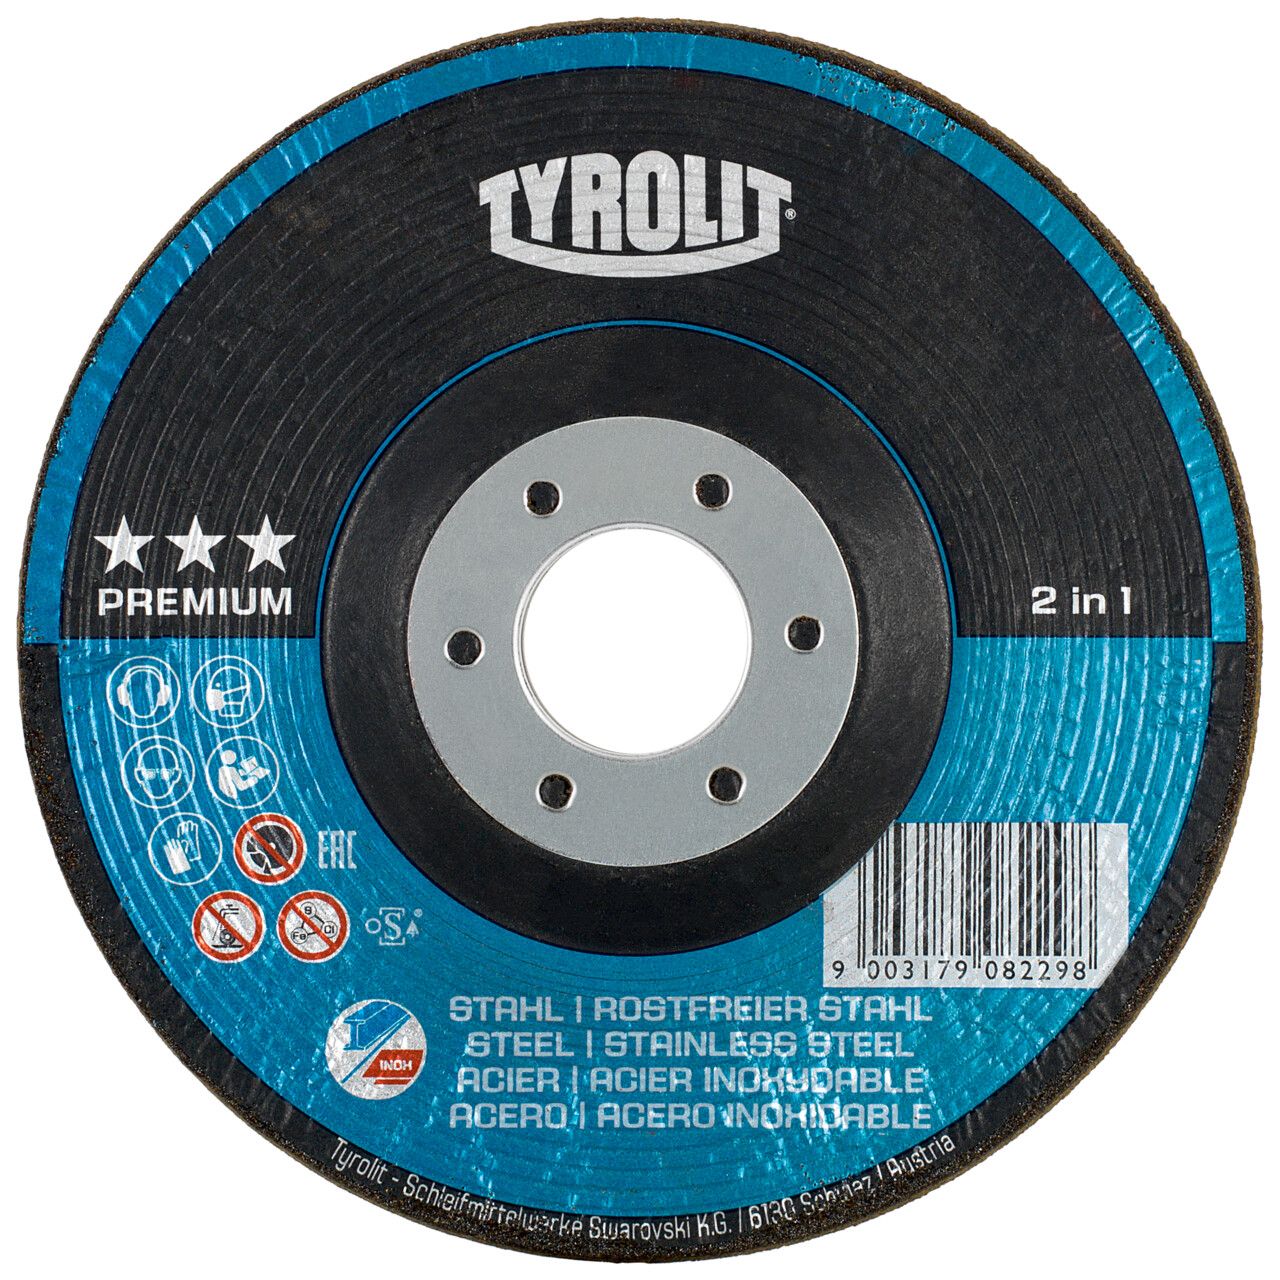 Tyrolit 2in1 RONDELLER® para acero y acero inoxidable 125 #29RON 125x22,23 A24Q-BF